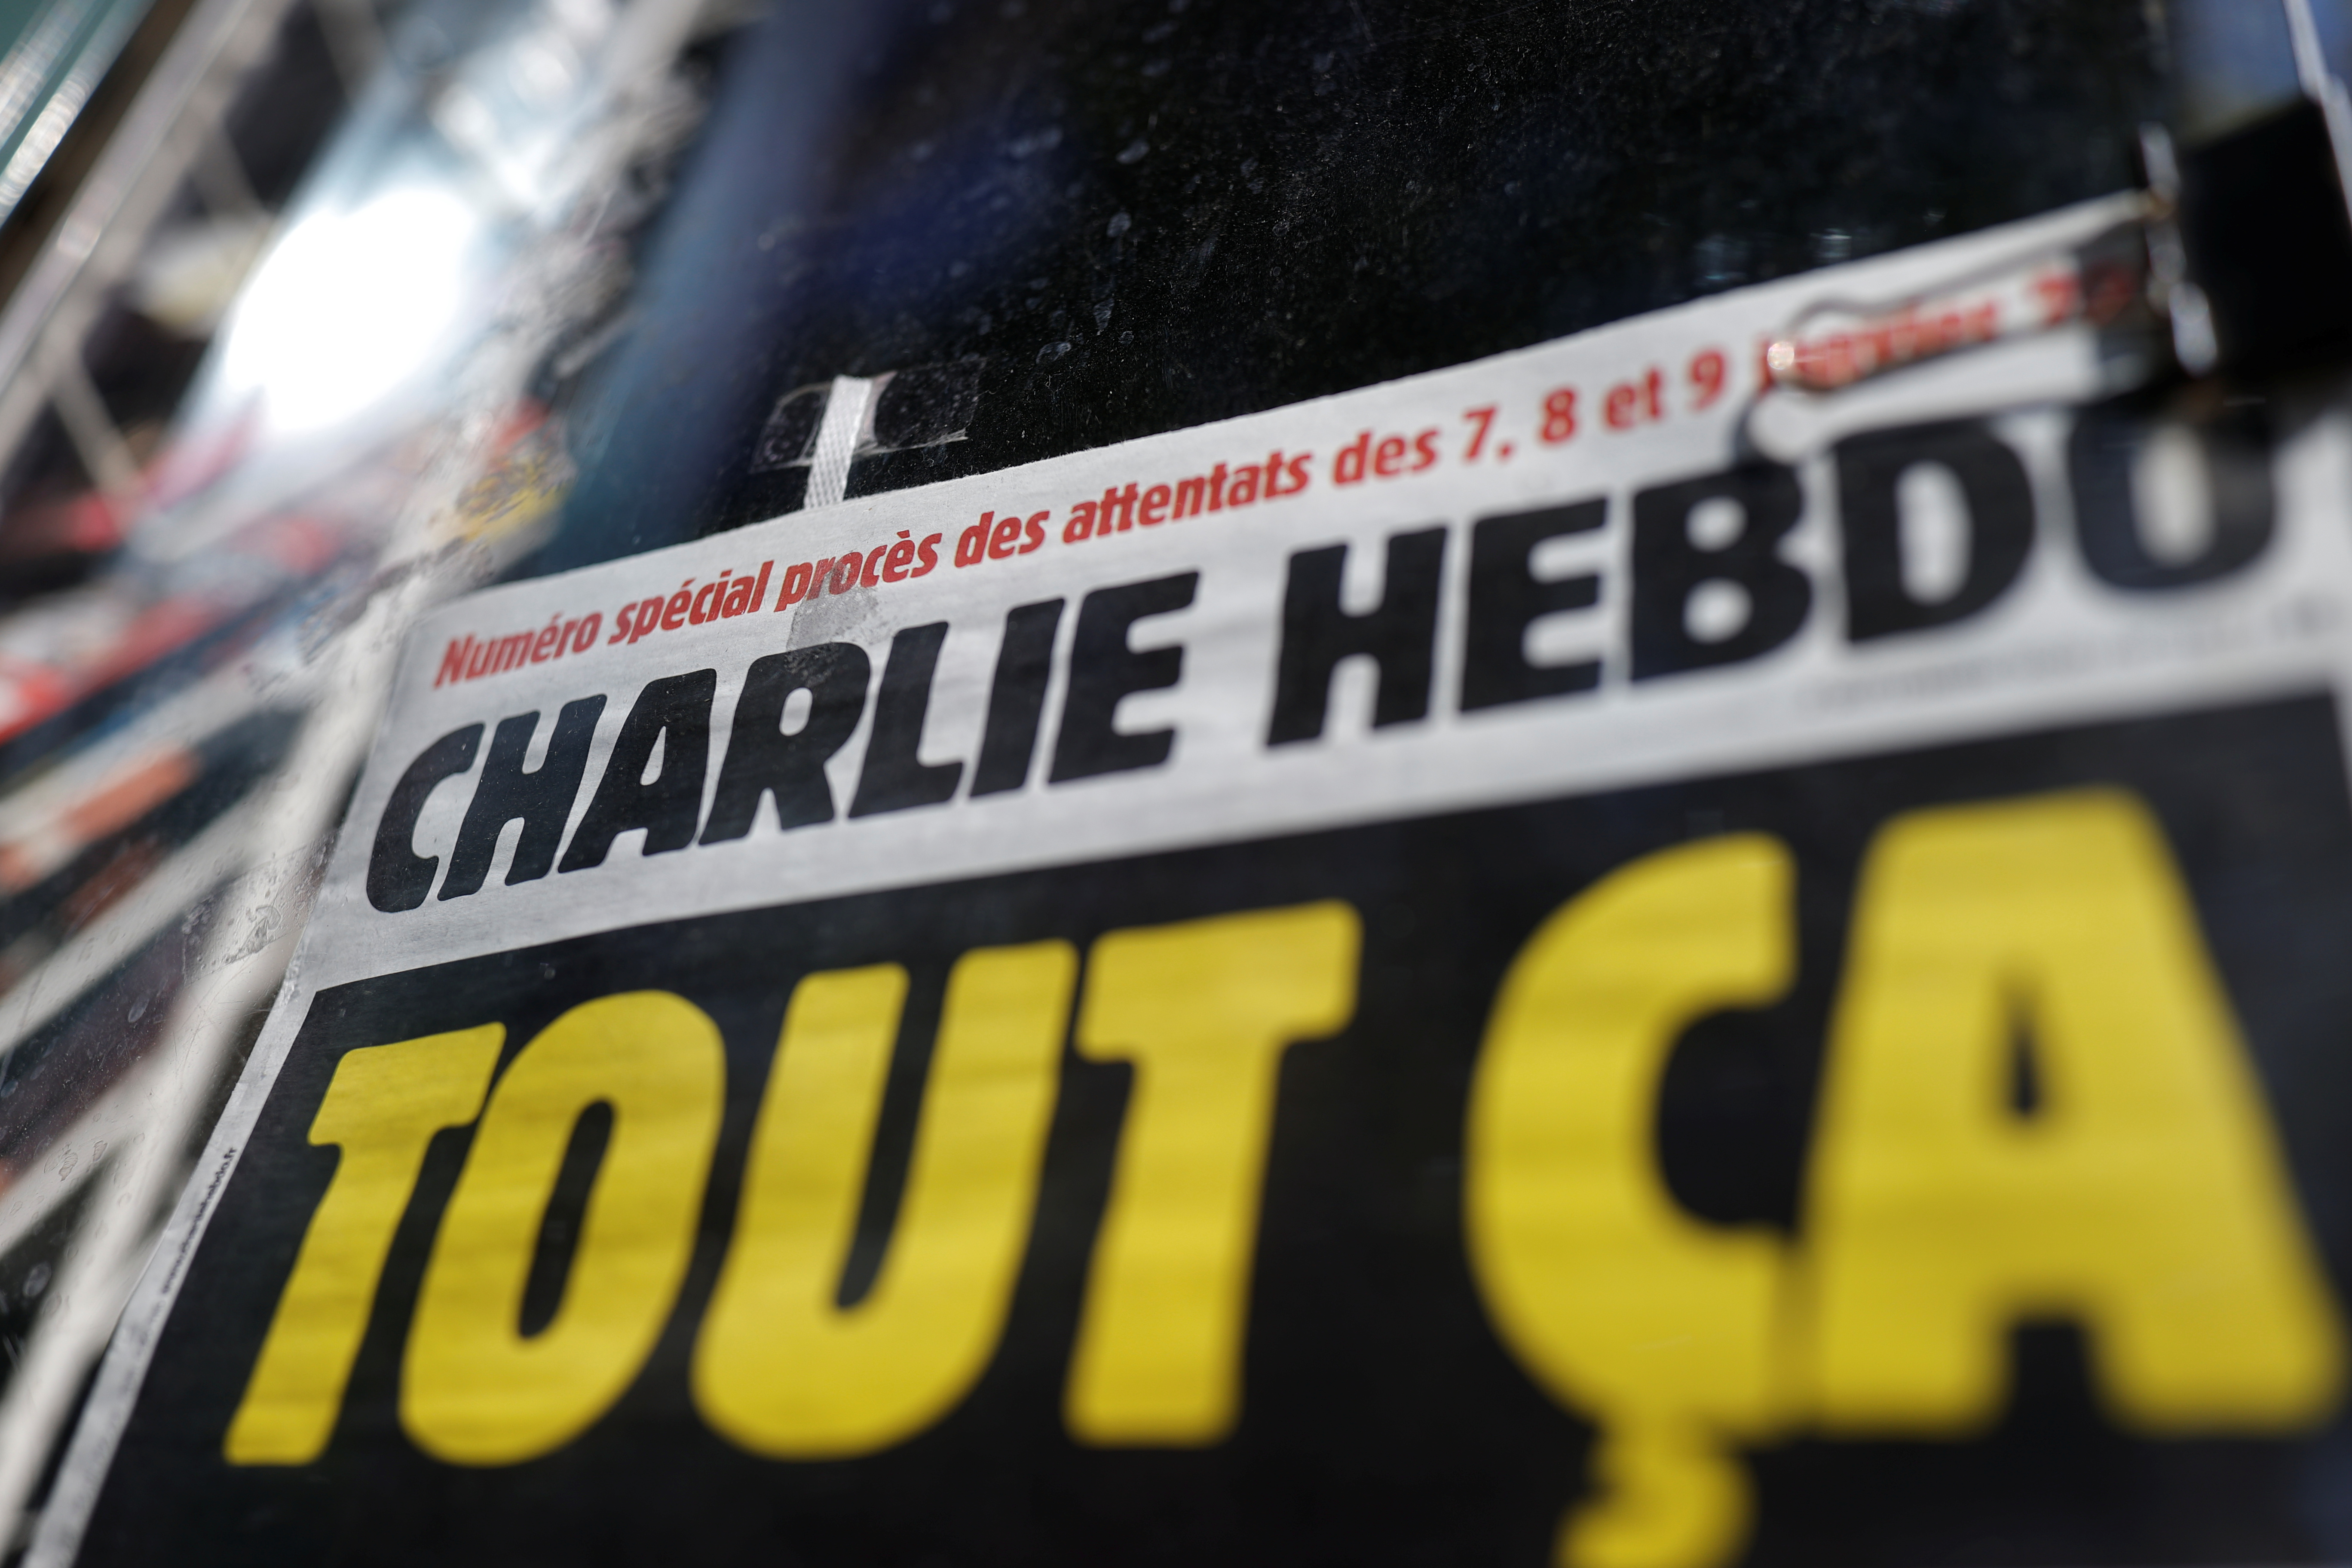 La portada de Charlie Hebdo (Reuters)